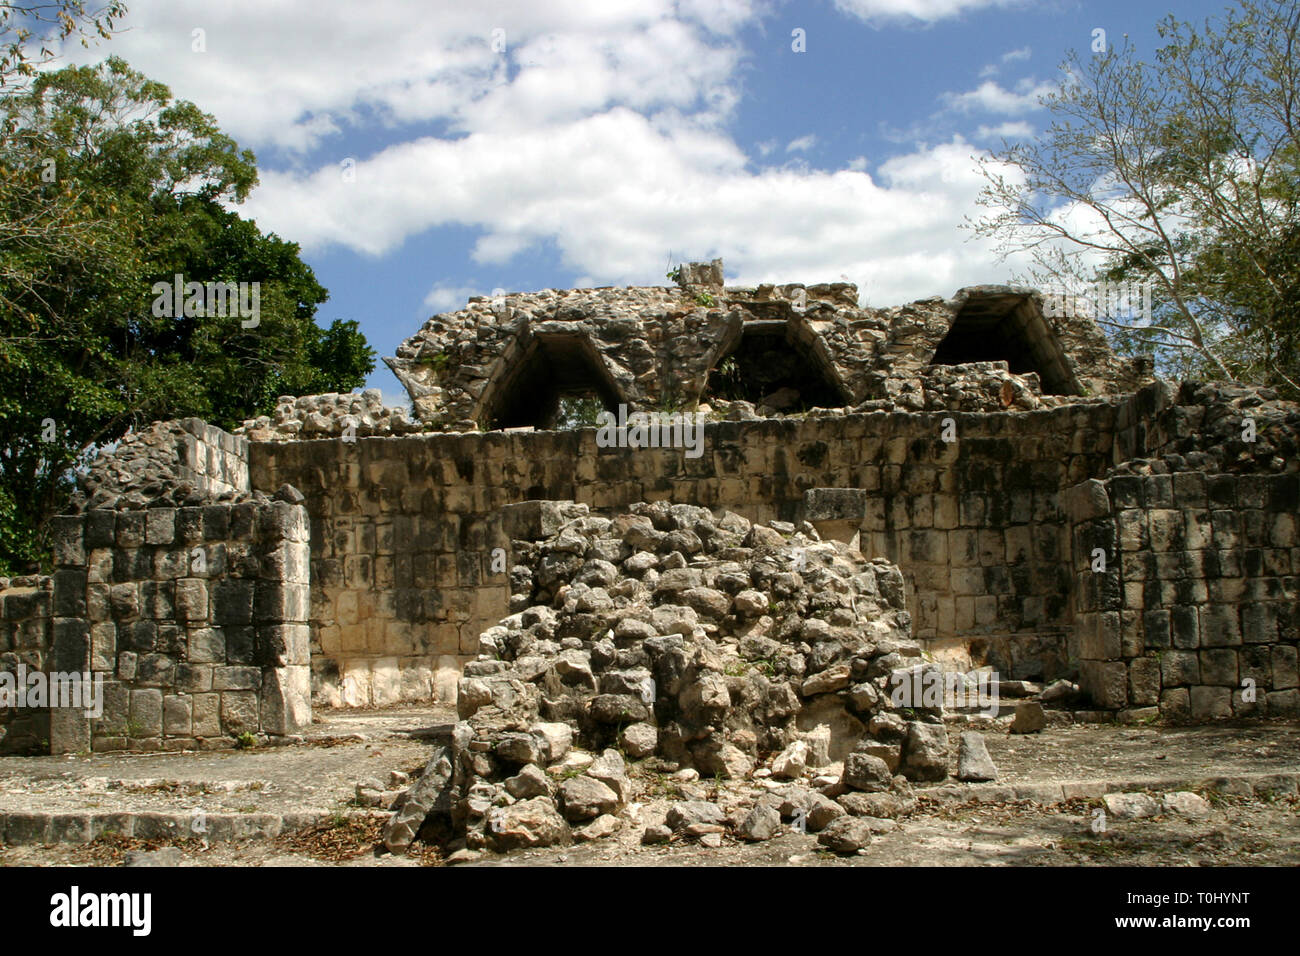 Zona arqueologica de Chichen Itza Zona arqueológica    Chichén ItzáChichén Itzá maya: (Chichén) Boca del pozo;   de los (Itzá) brujos de agua.   Es uno de los principales sitios arqueológicos de la   península de Yucatán, en México, ubicado en el municipio de Tinum.  *Photo:*©Francisco* Morales/DAMMPHOTO.COM/NORTEPHOTO  * No * sale * a * third * Stock Photo